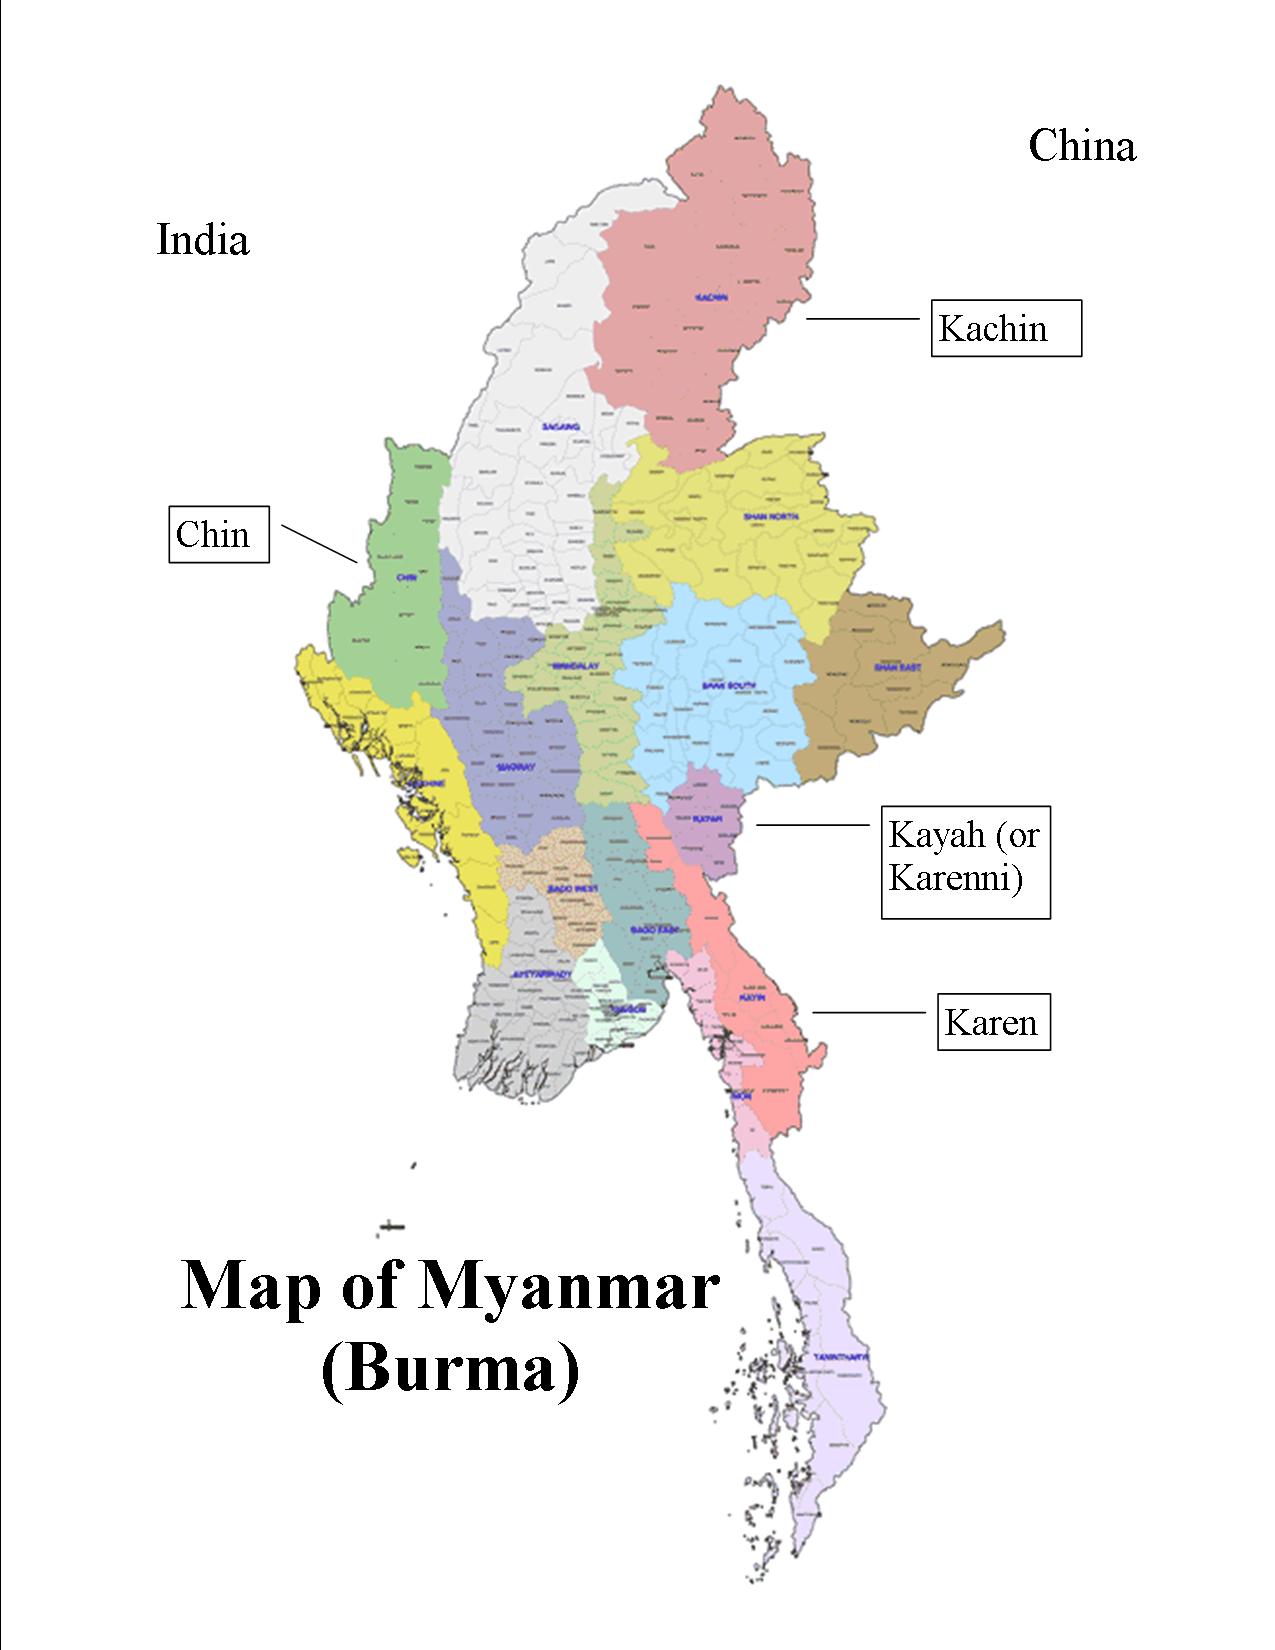 Karen People - All Things Burma